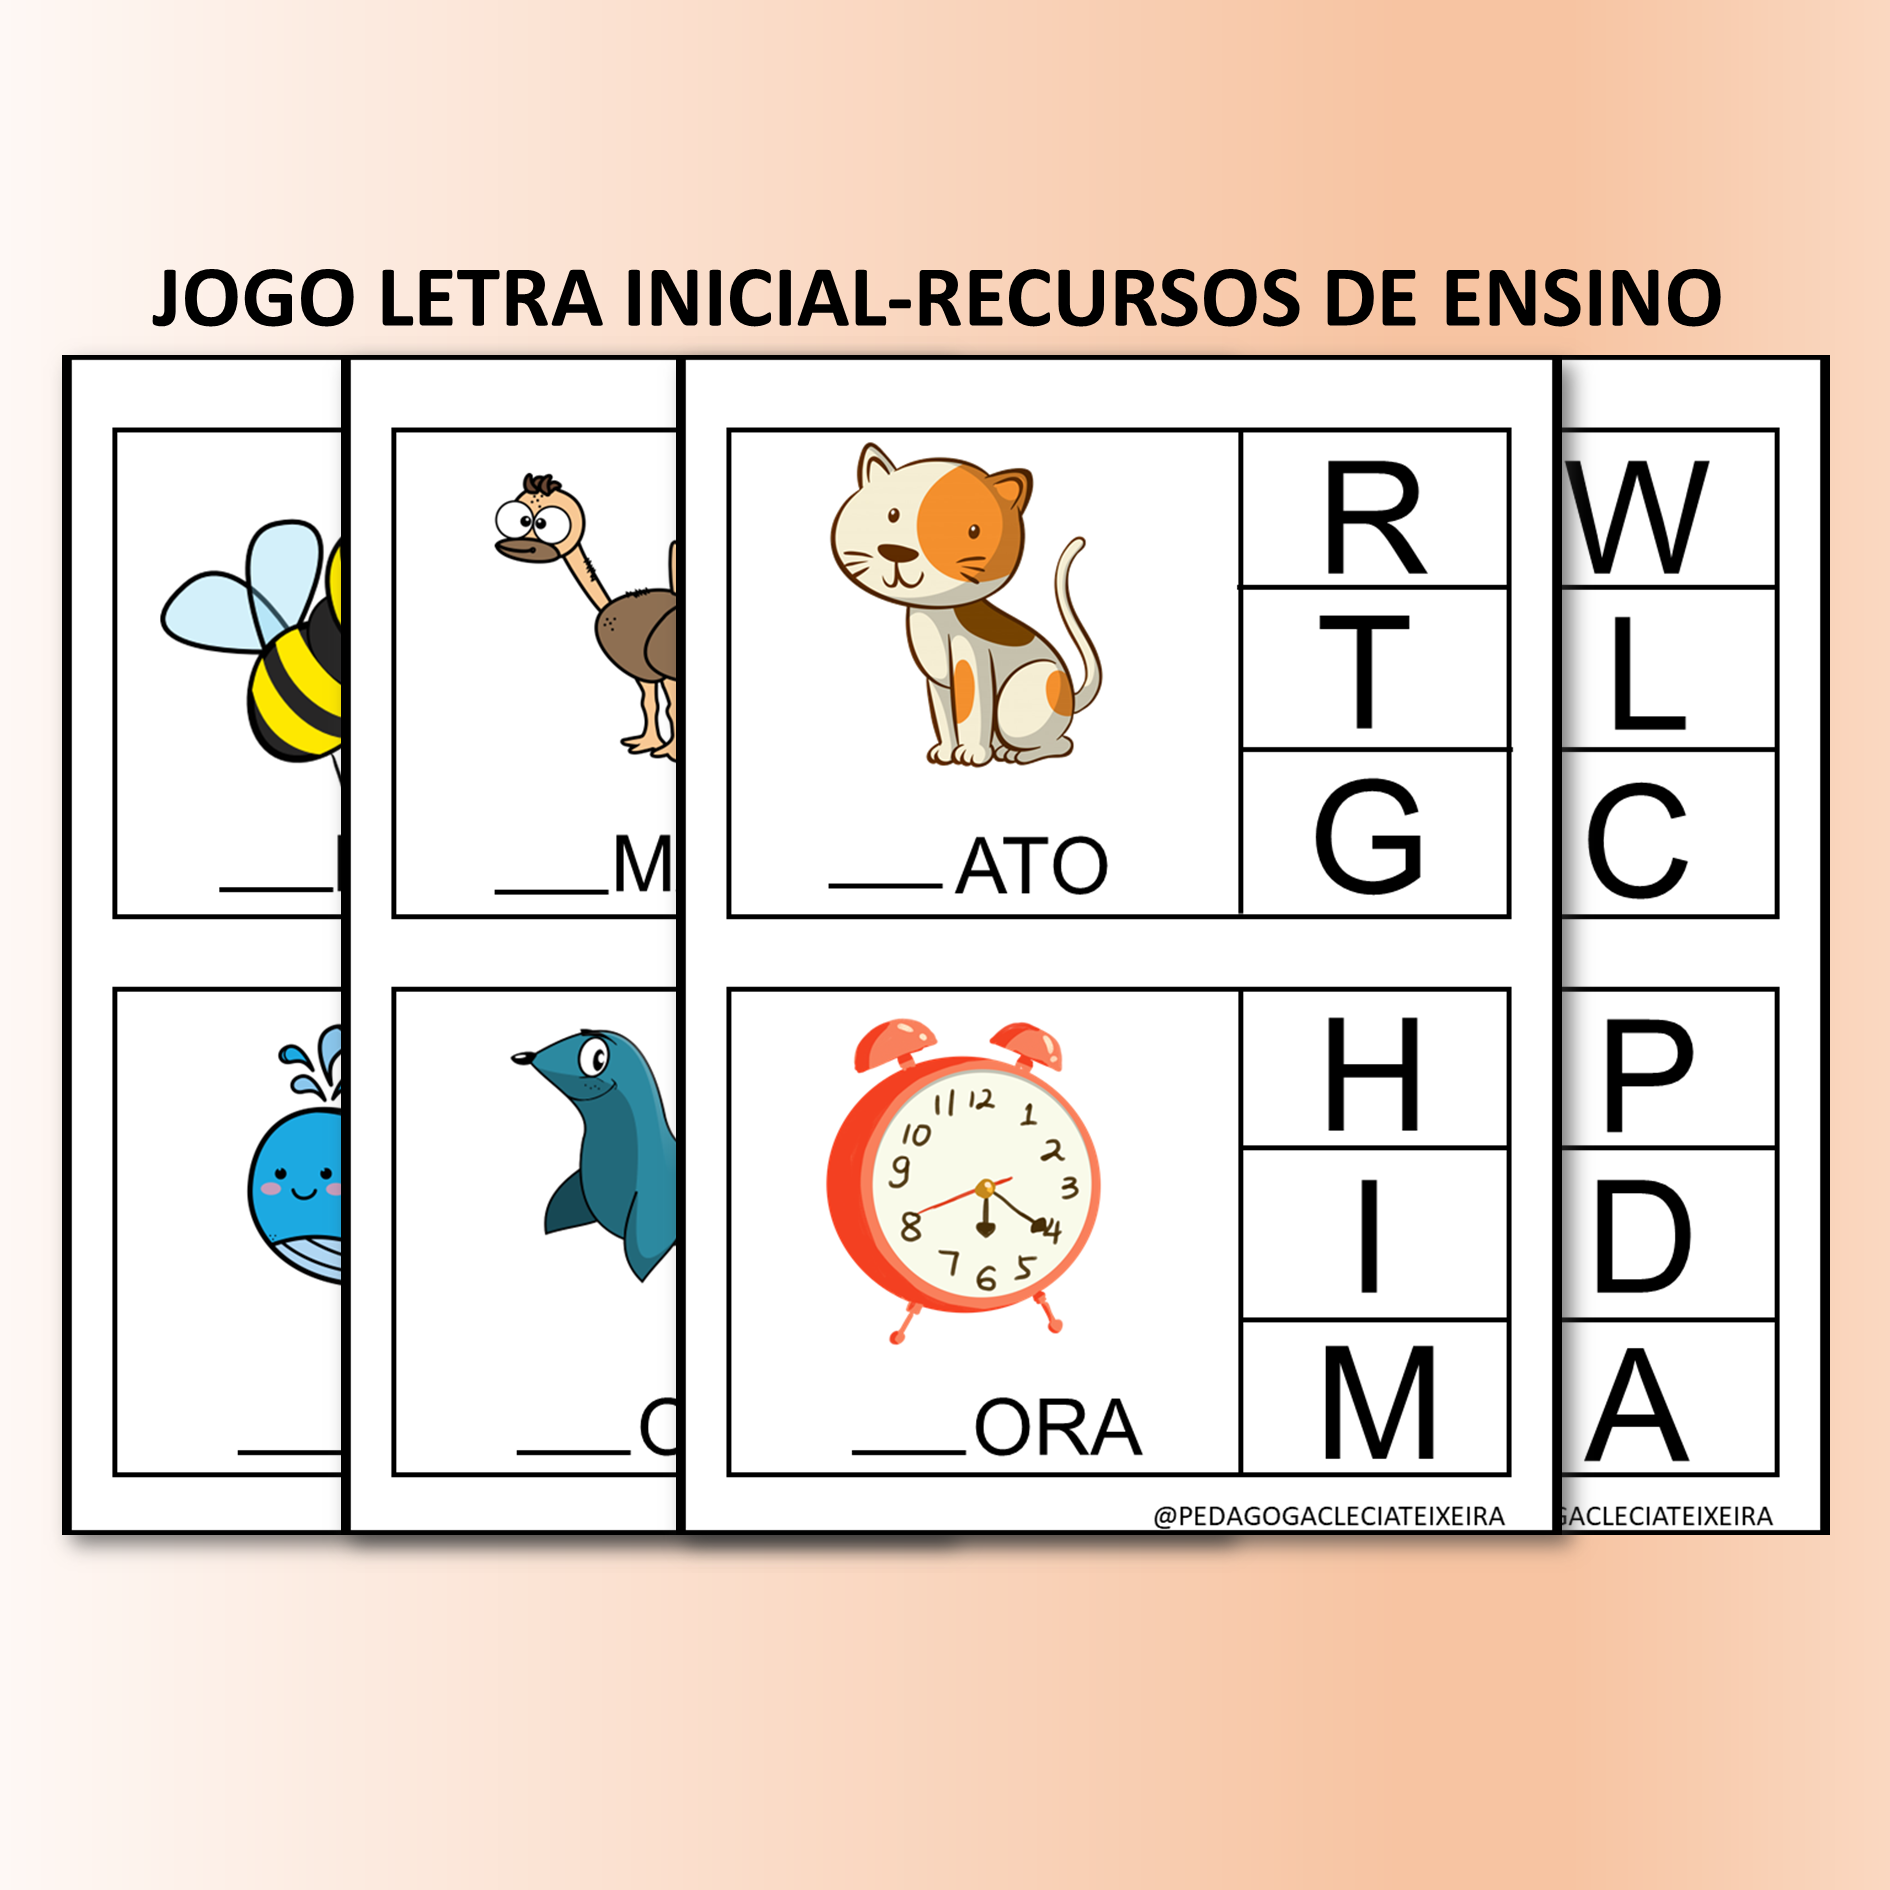 Jogo para imprimir: Roleta das letras - Clécia Teixeira